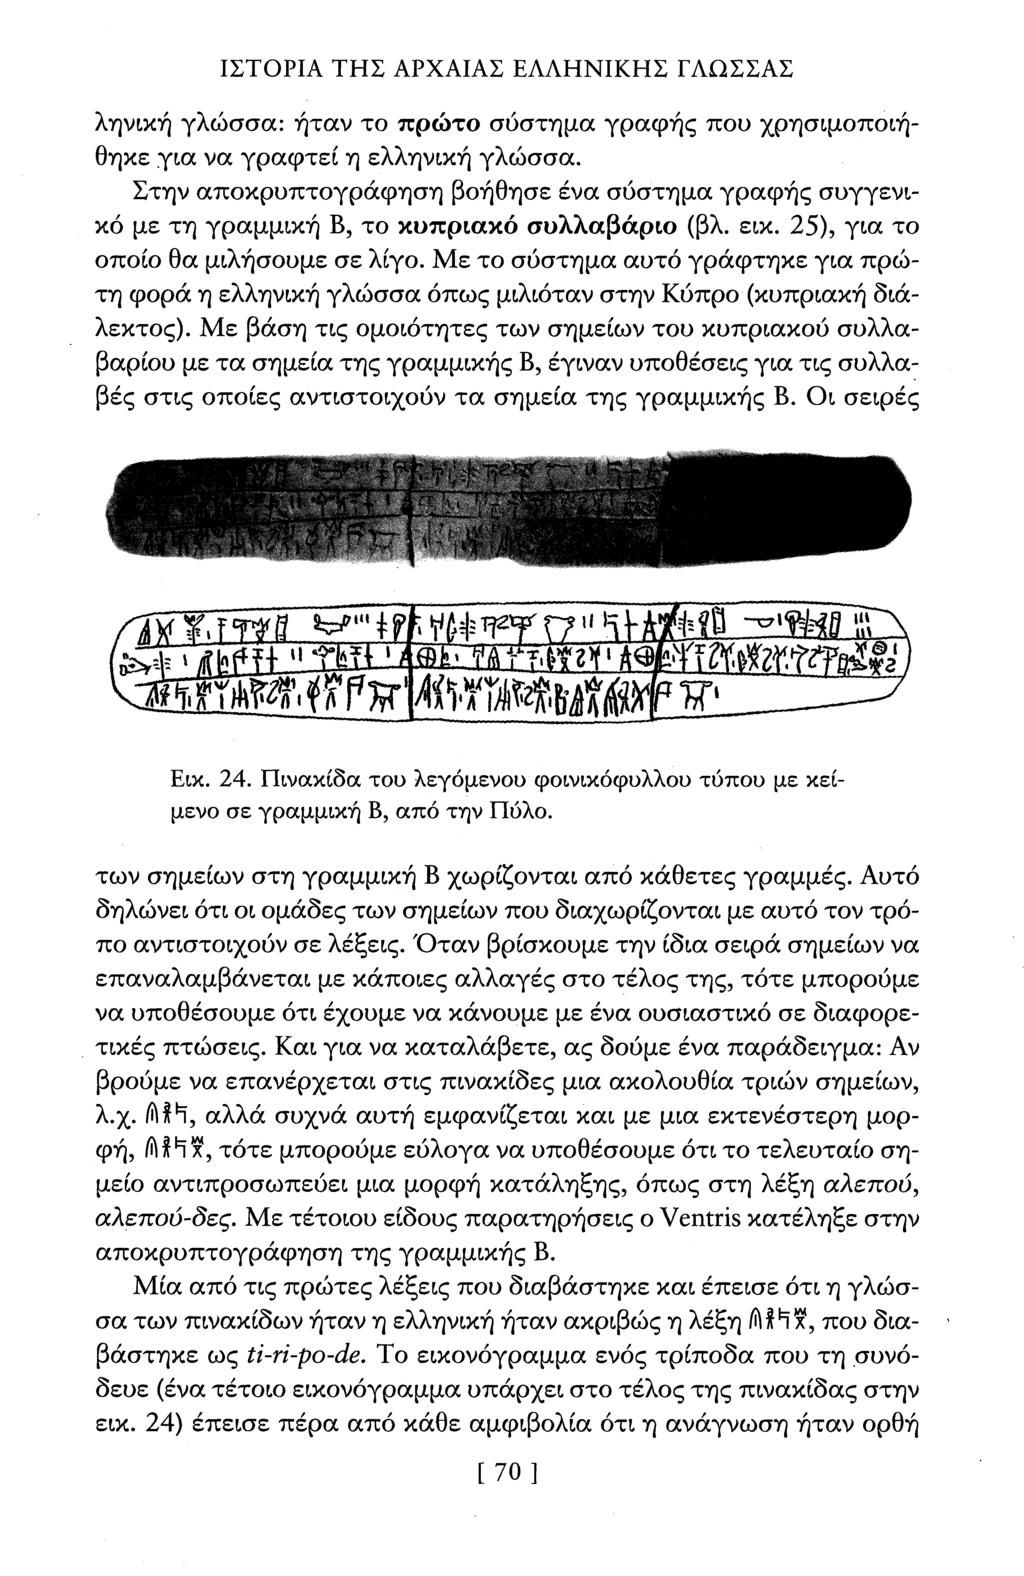 ΙΣΤΟΡΙΑ ΤΗΣ ΑΡΧΑΙΑΣ ΕΑΑΗΝΙΚΗΣ ΓΛΩΣΣΑΣ ληνική γλώσσα: ήταν το πρώτο σύστημα γραφής που χρησιμοποιήθηκε για να γραφτεί η ελληνική γλώσσα.